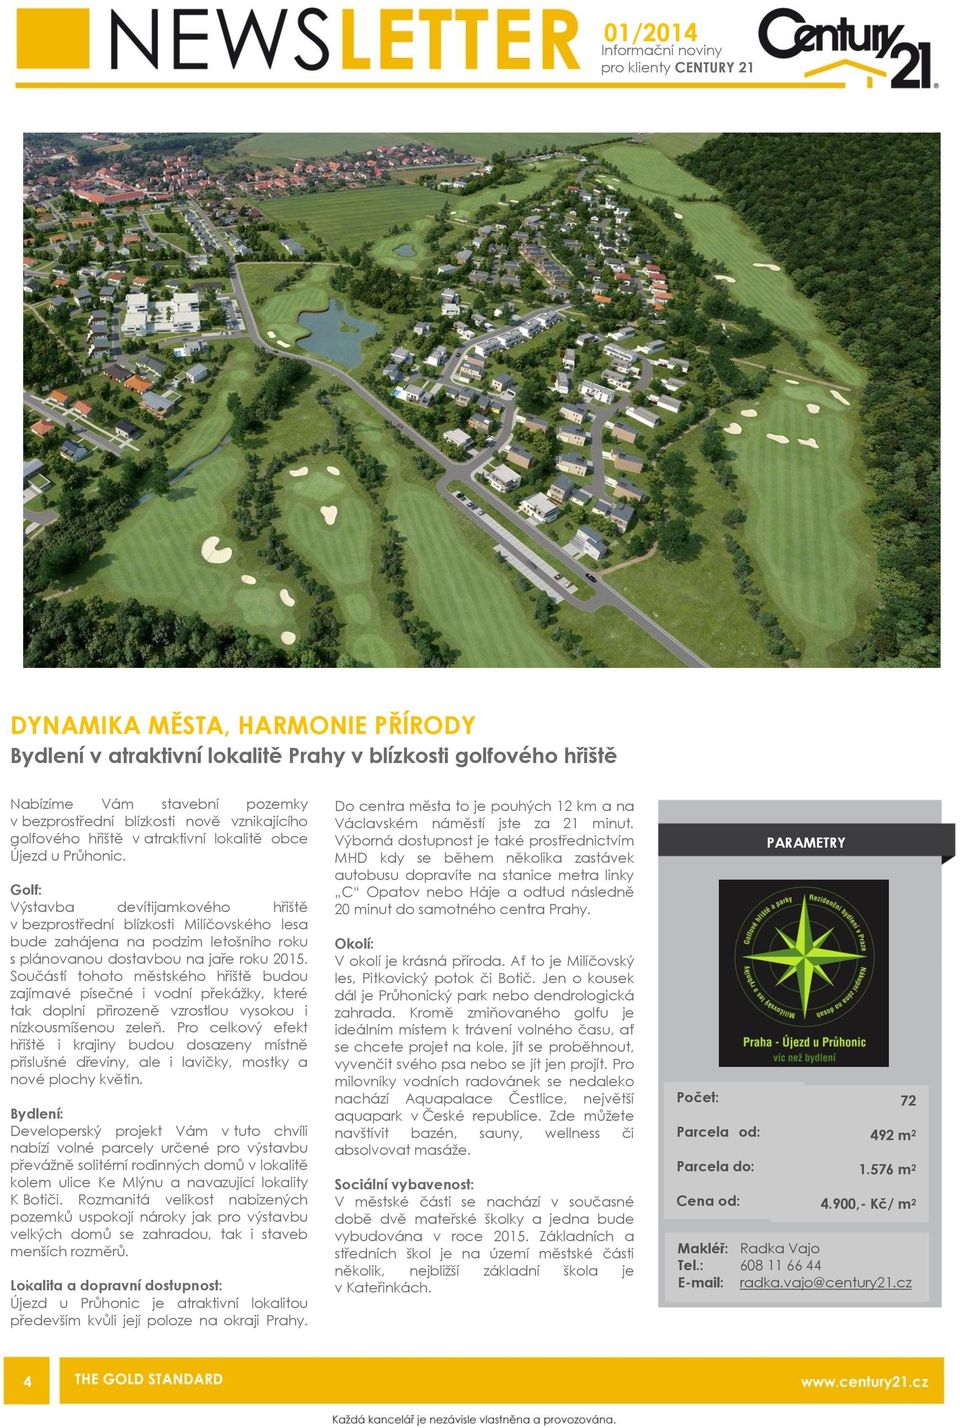 Golf: Výstavba devítijamkového hřiště v bezprostřední blízkosti Milíčovského lesa bude zahájena na podzim letošního roku s plánovanou dostavbou na jaře roku 2015.